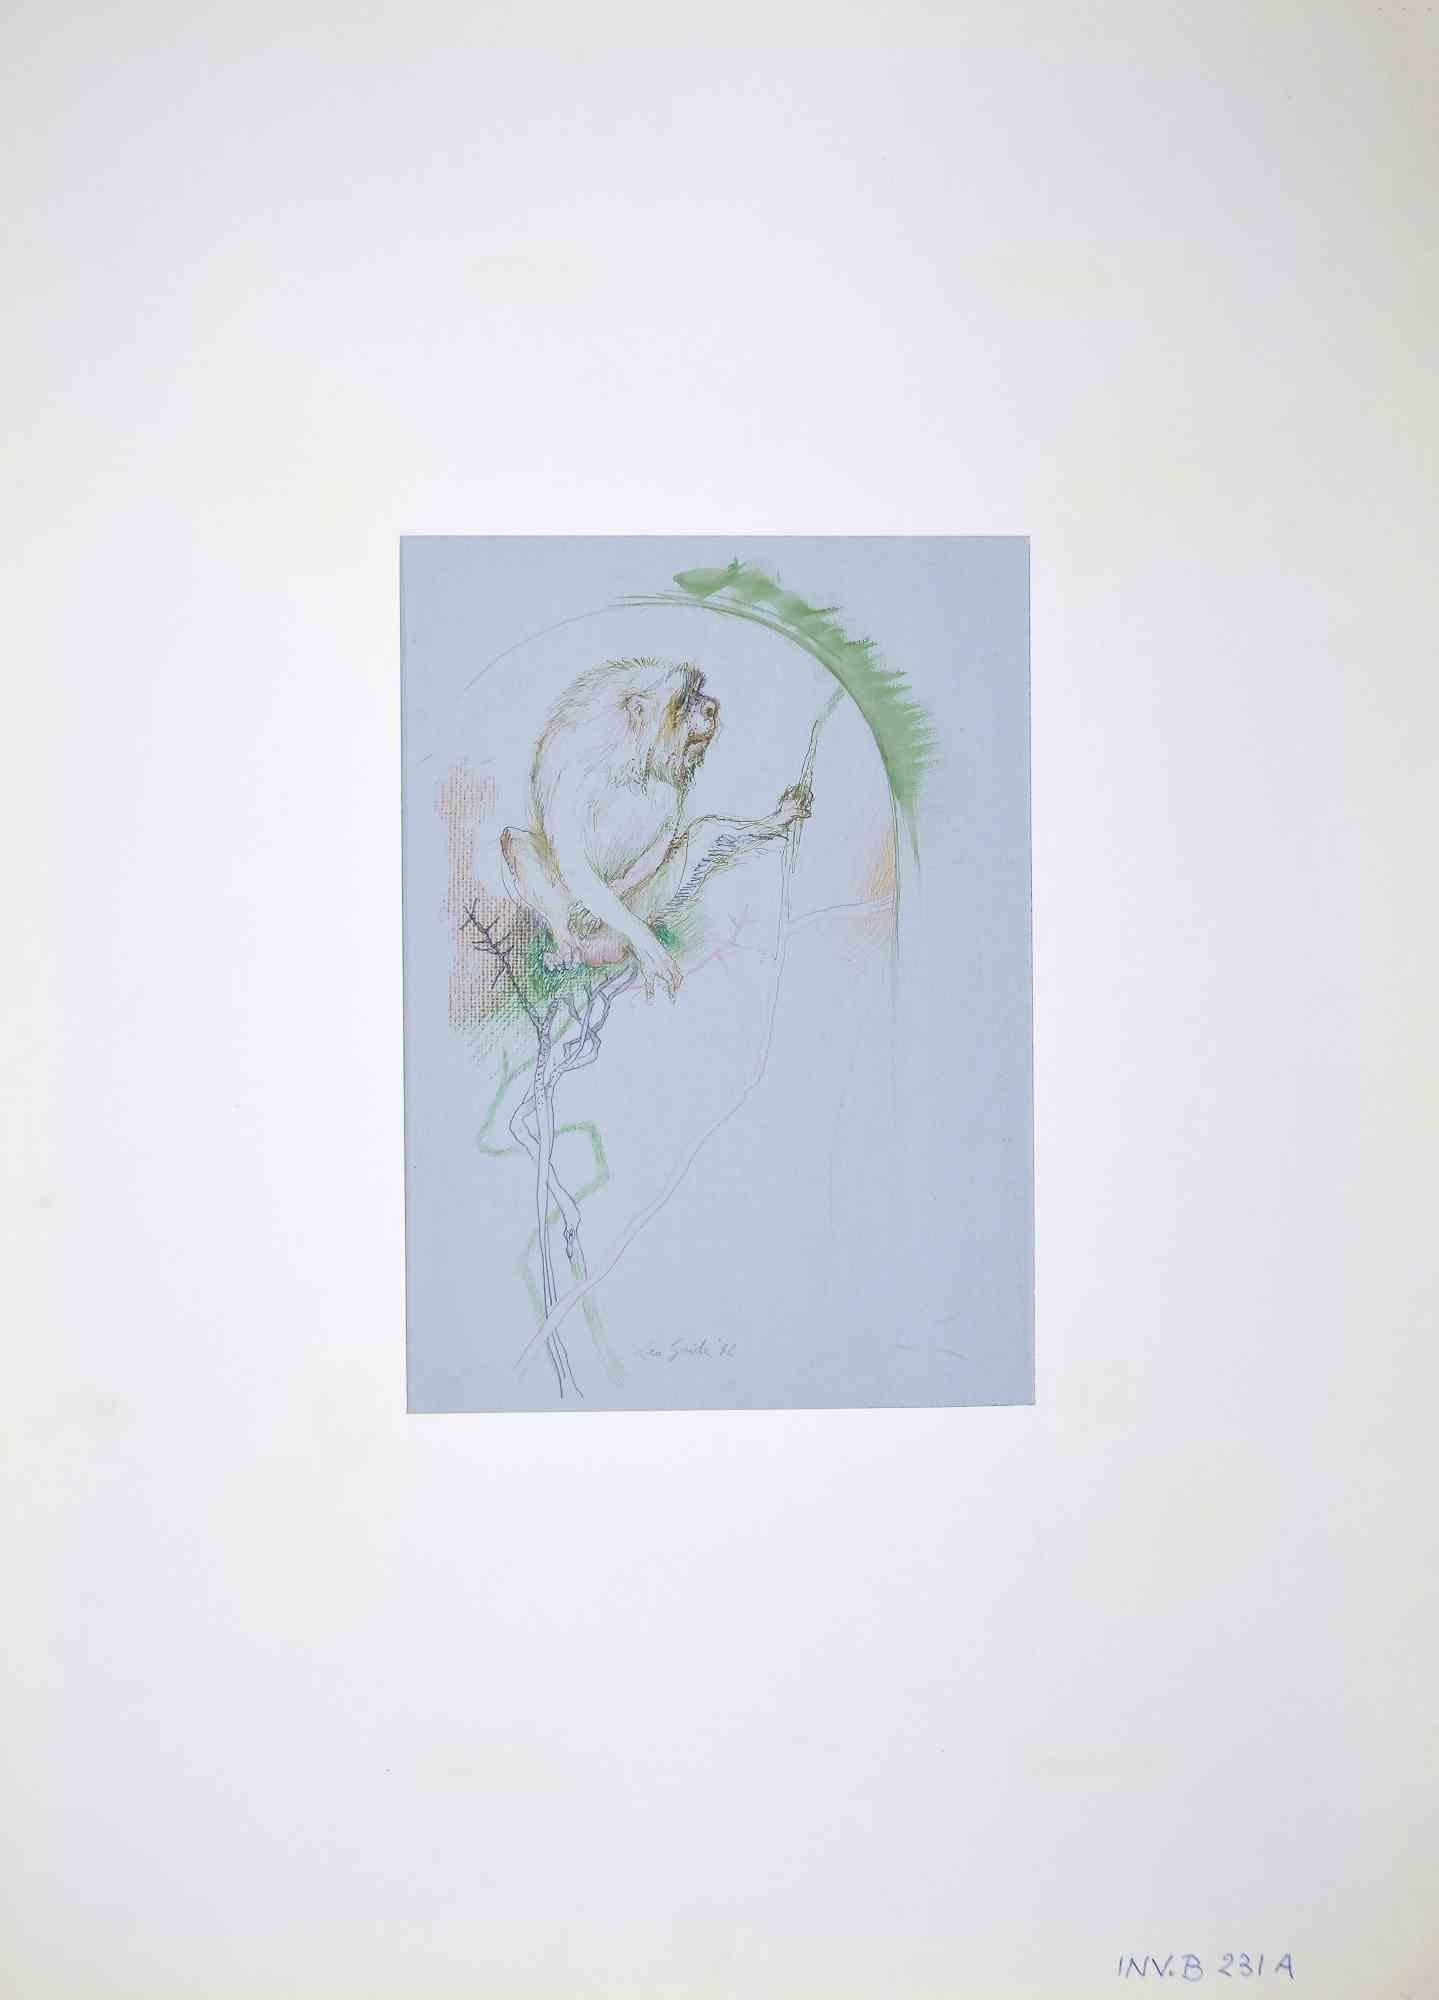 Affen – Zeichnung von Leo Guida – 1970